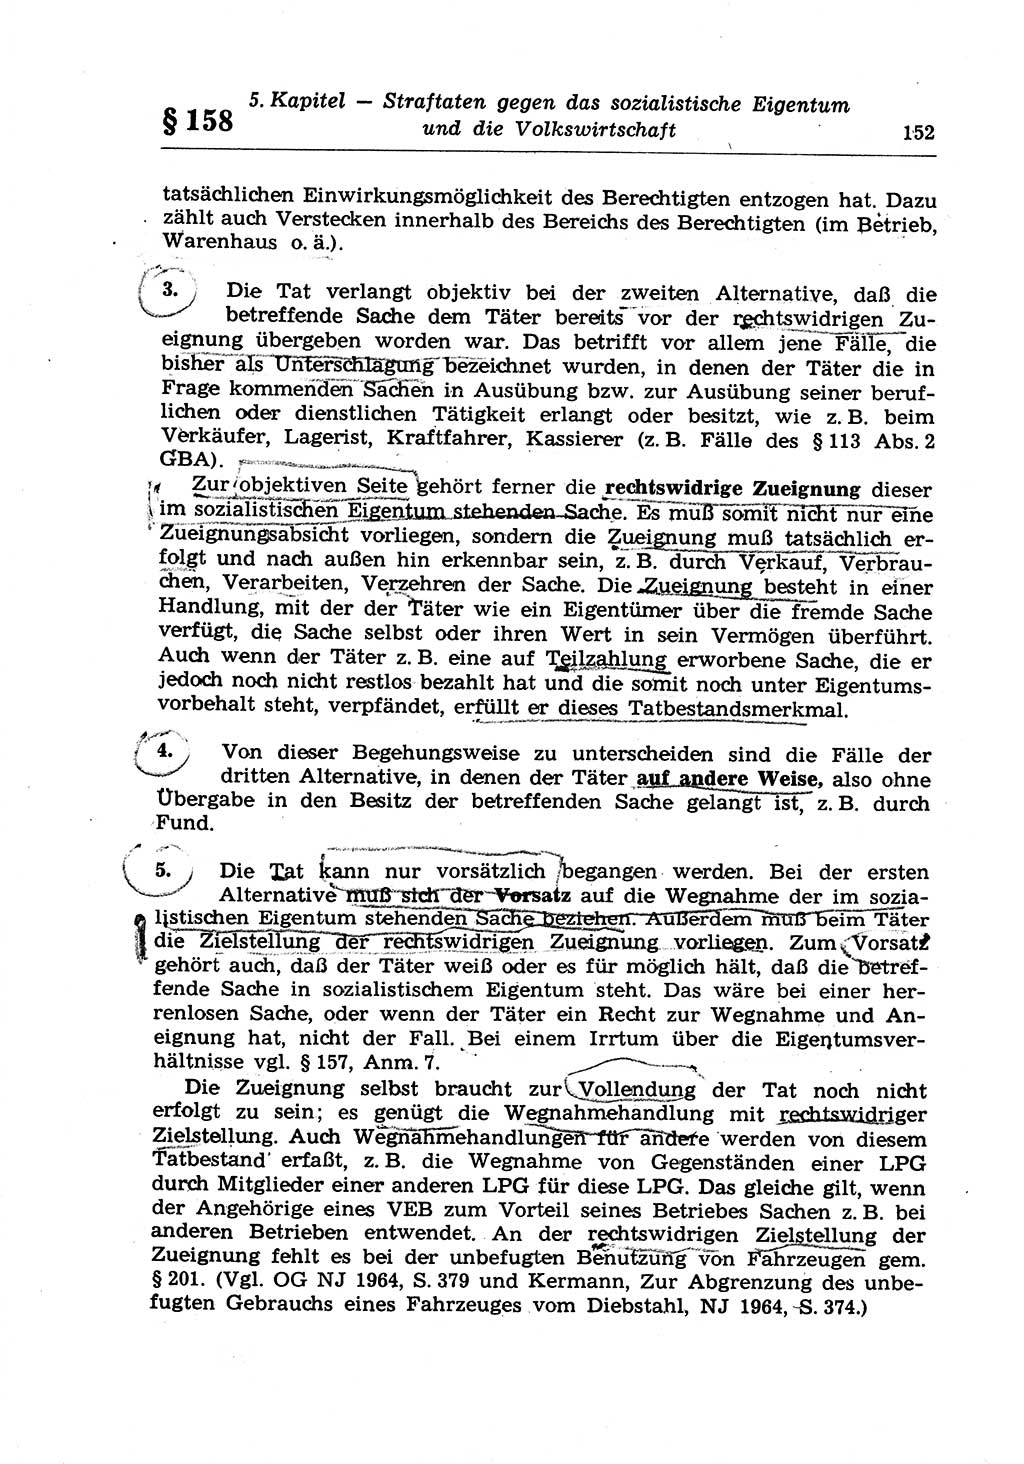 Strafrecht der Deutschen Demokratischen Republik (DDR), Lehrkommentar zum Strafgesetzbuch (StGB), Besonderer Teil 1970, Seite 152 (Strafr. DDR Lehrkomm. StGB BT 1970, S. 152)